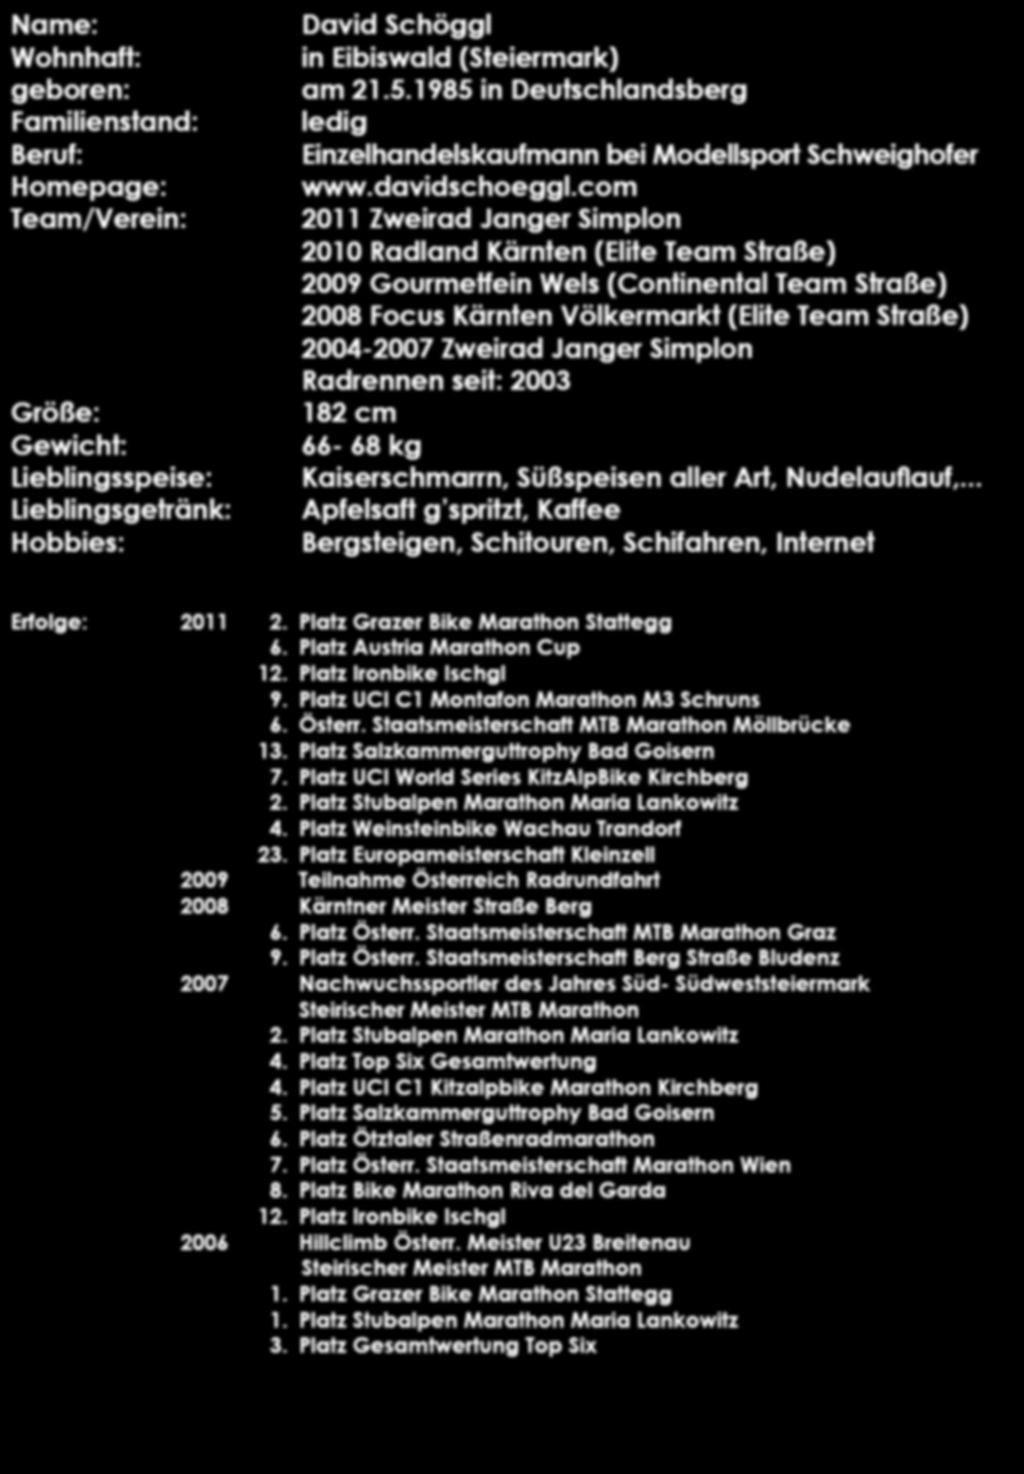 Name: Wohnhaft: geboren: Familienstand: Beruf: Homepage: Team/Verein: Größe: Gewicht: Lieblingsspeise: Lieblingsgetränk: Hobbies: David Schöggl in Eibiswald (Steiermark) am 21.5.